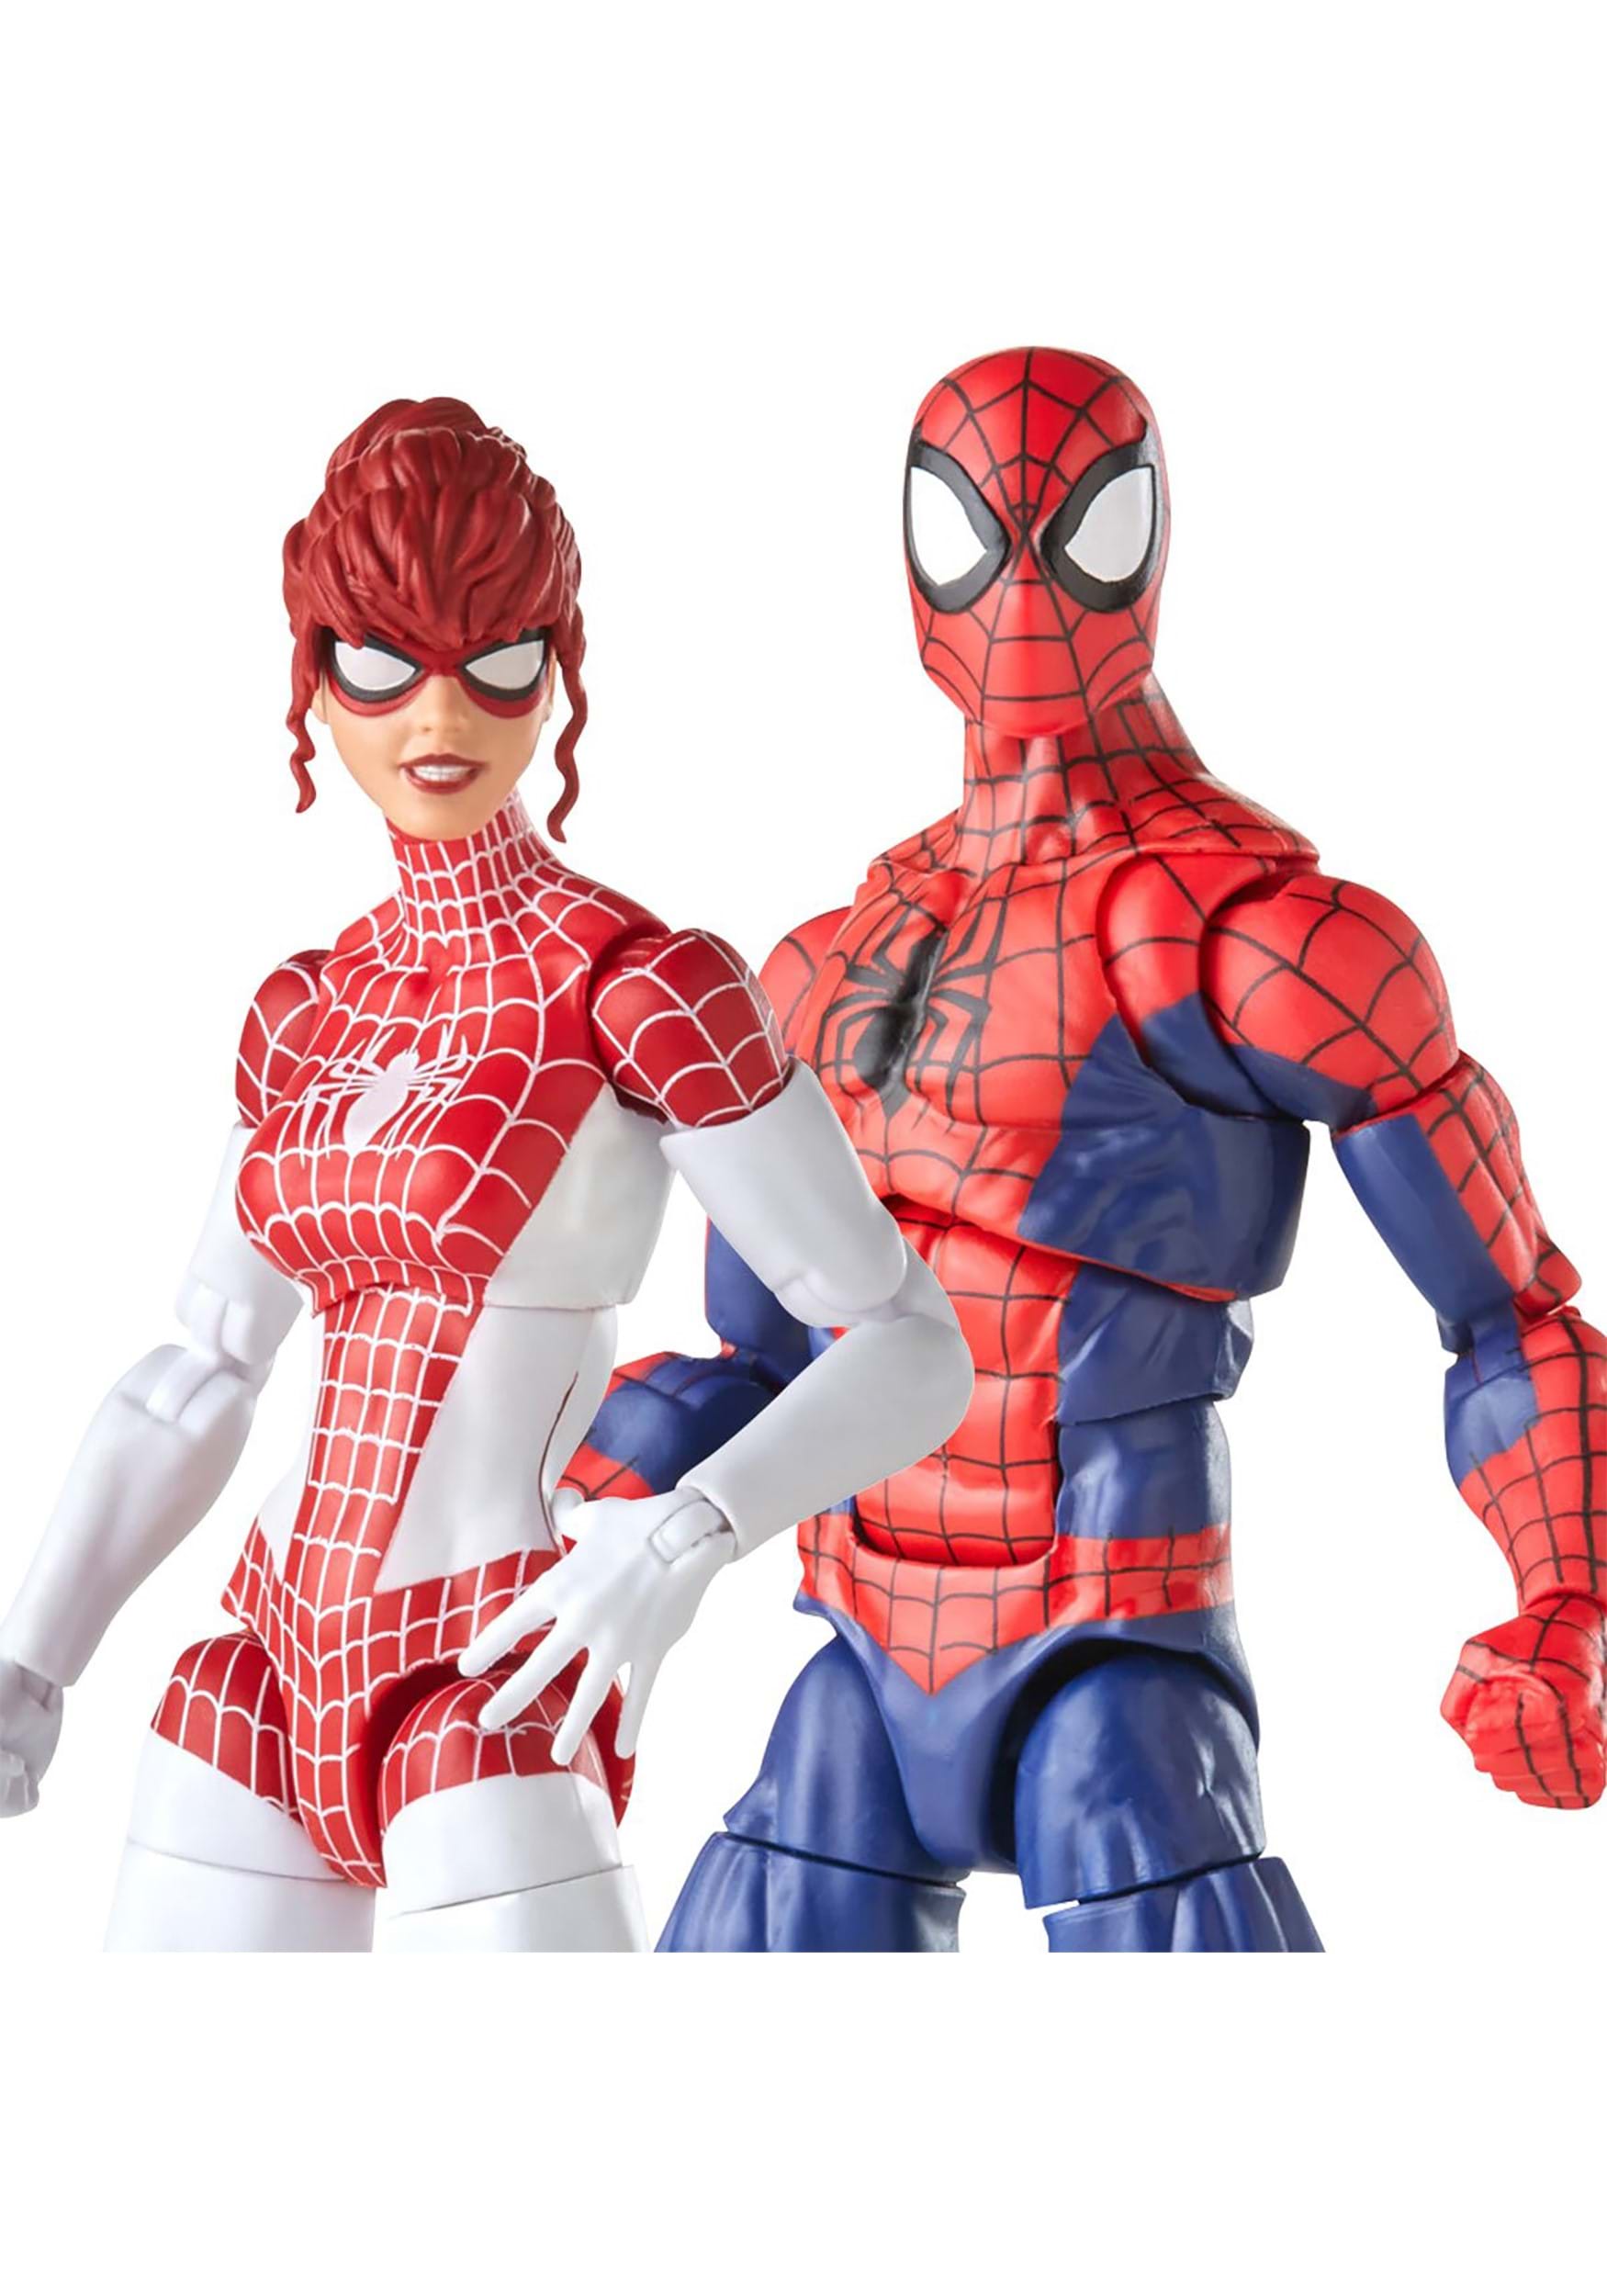 Spider-Man Marvel Legends Spider-Man and Spinneret Action Figures